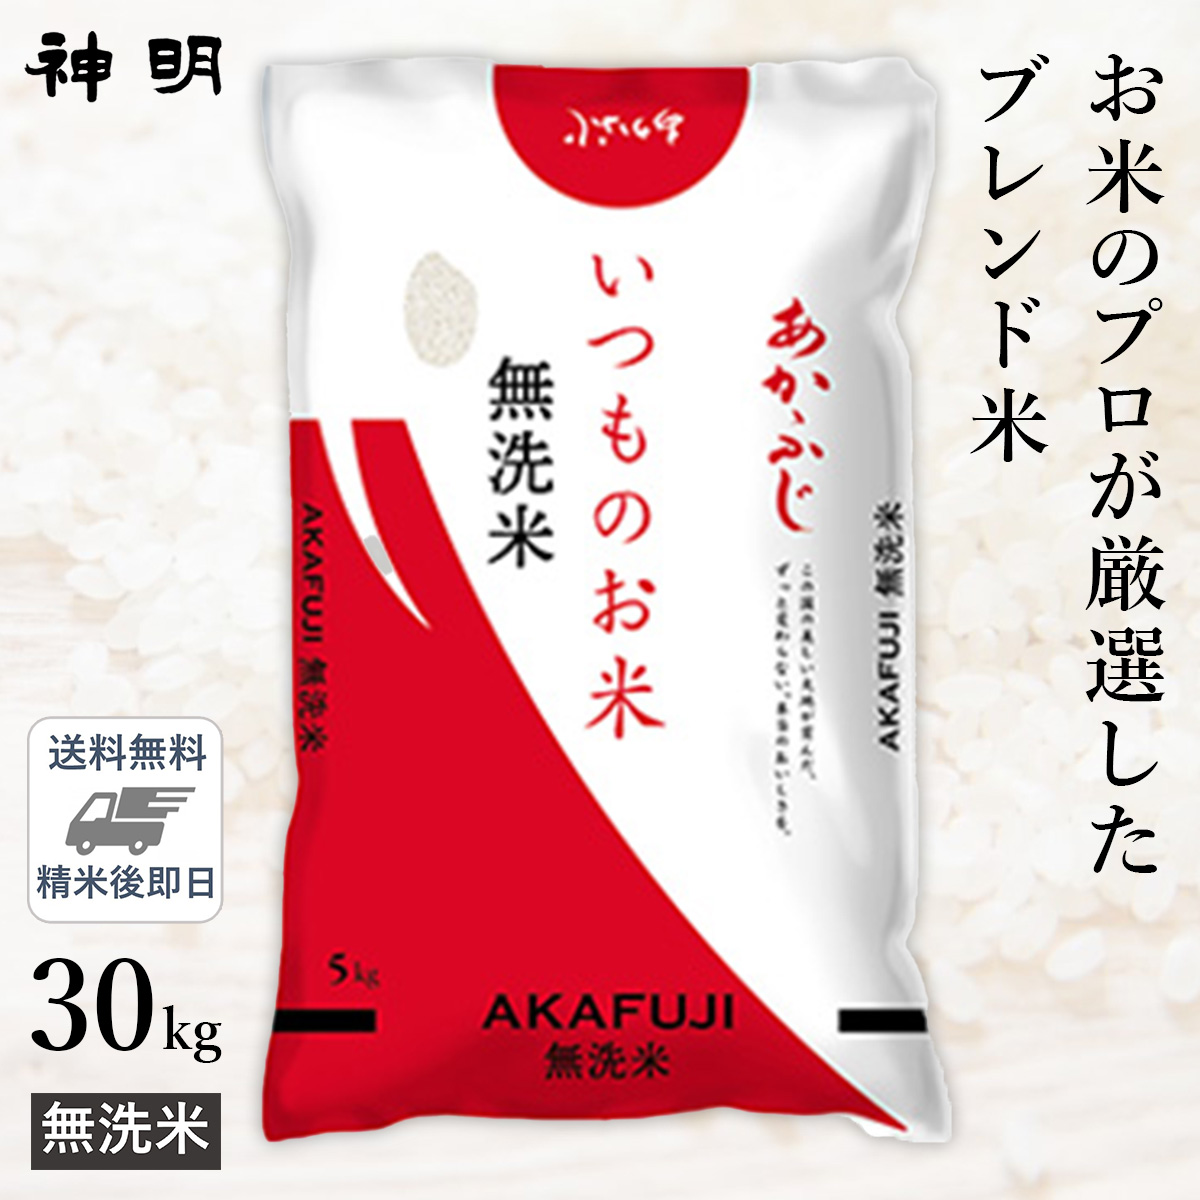 ○【送料無料】無洗米 いつものお米あかふじ 30kg(5kg×6袋) 精米仕立て